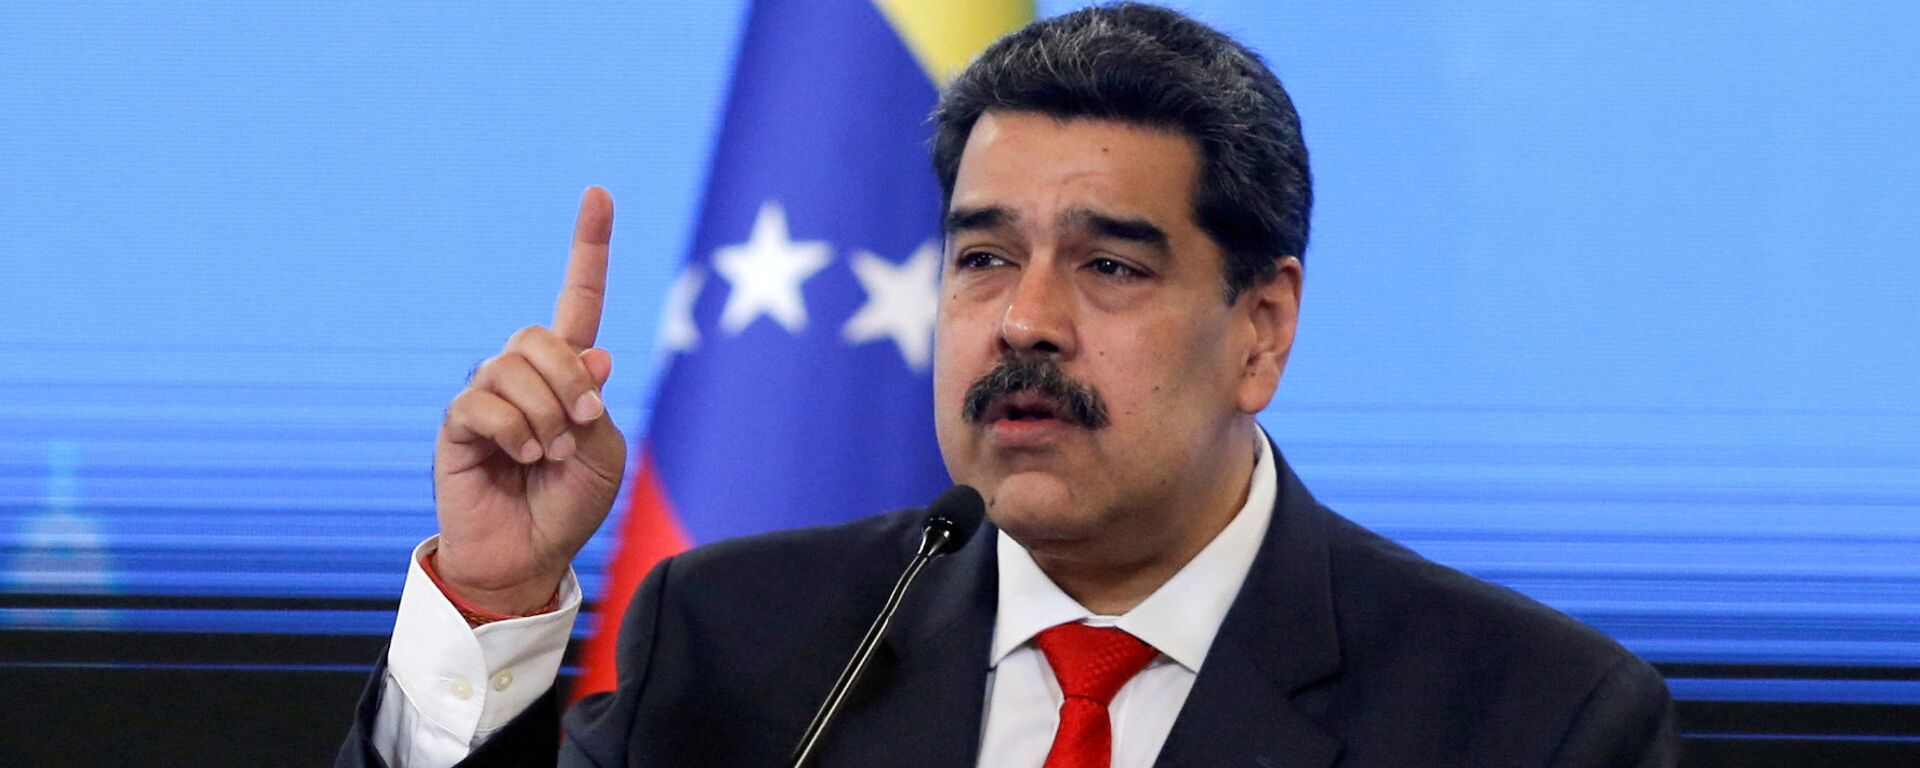 Nicolás Maduro, presidente de Venezuela - Sputnik Mundo, 1920, 02.12.2021